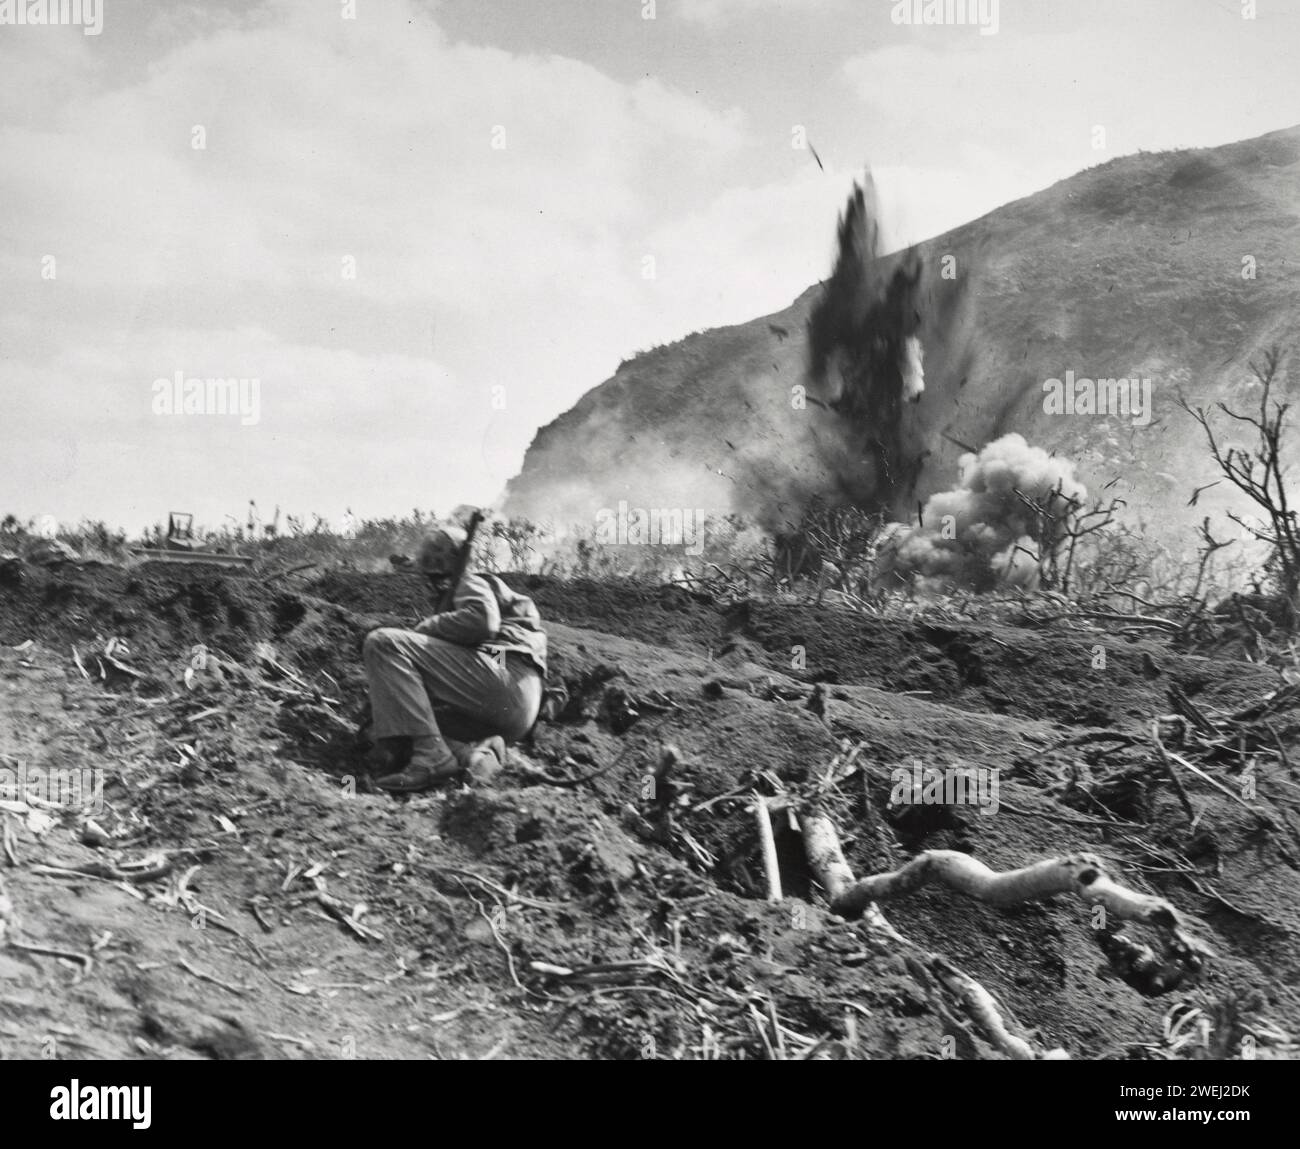 Die Marines kämpften in der Nähe der Basis des Mount Suribachi während der Schlacht von Iwo Jima 1945 Stockfoto